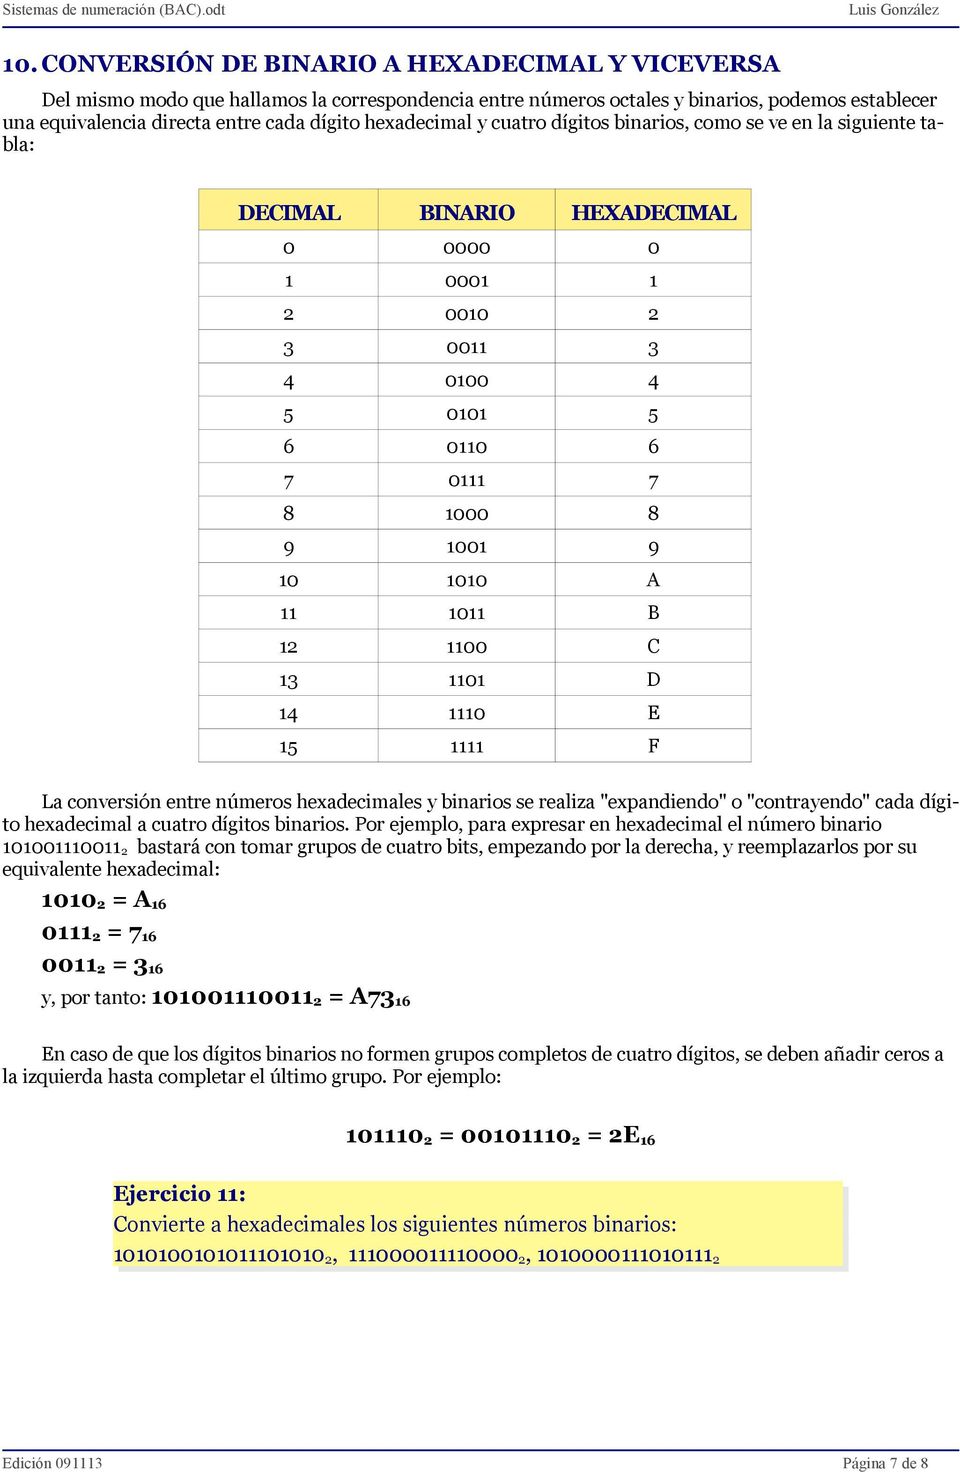 A 11 1011 B 12 1100 C 13 1101 D 14 1110 E 15 1111 F La conversión entre números hexadecimales y binarios se realiza "expandiendo" o "contrayendo" cada dígito hexadecimal a cuatro dígitos binarios.